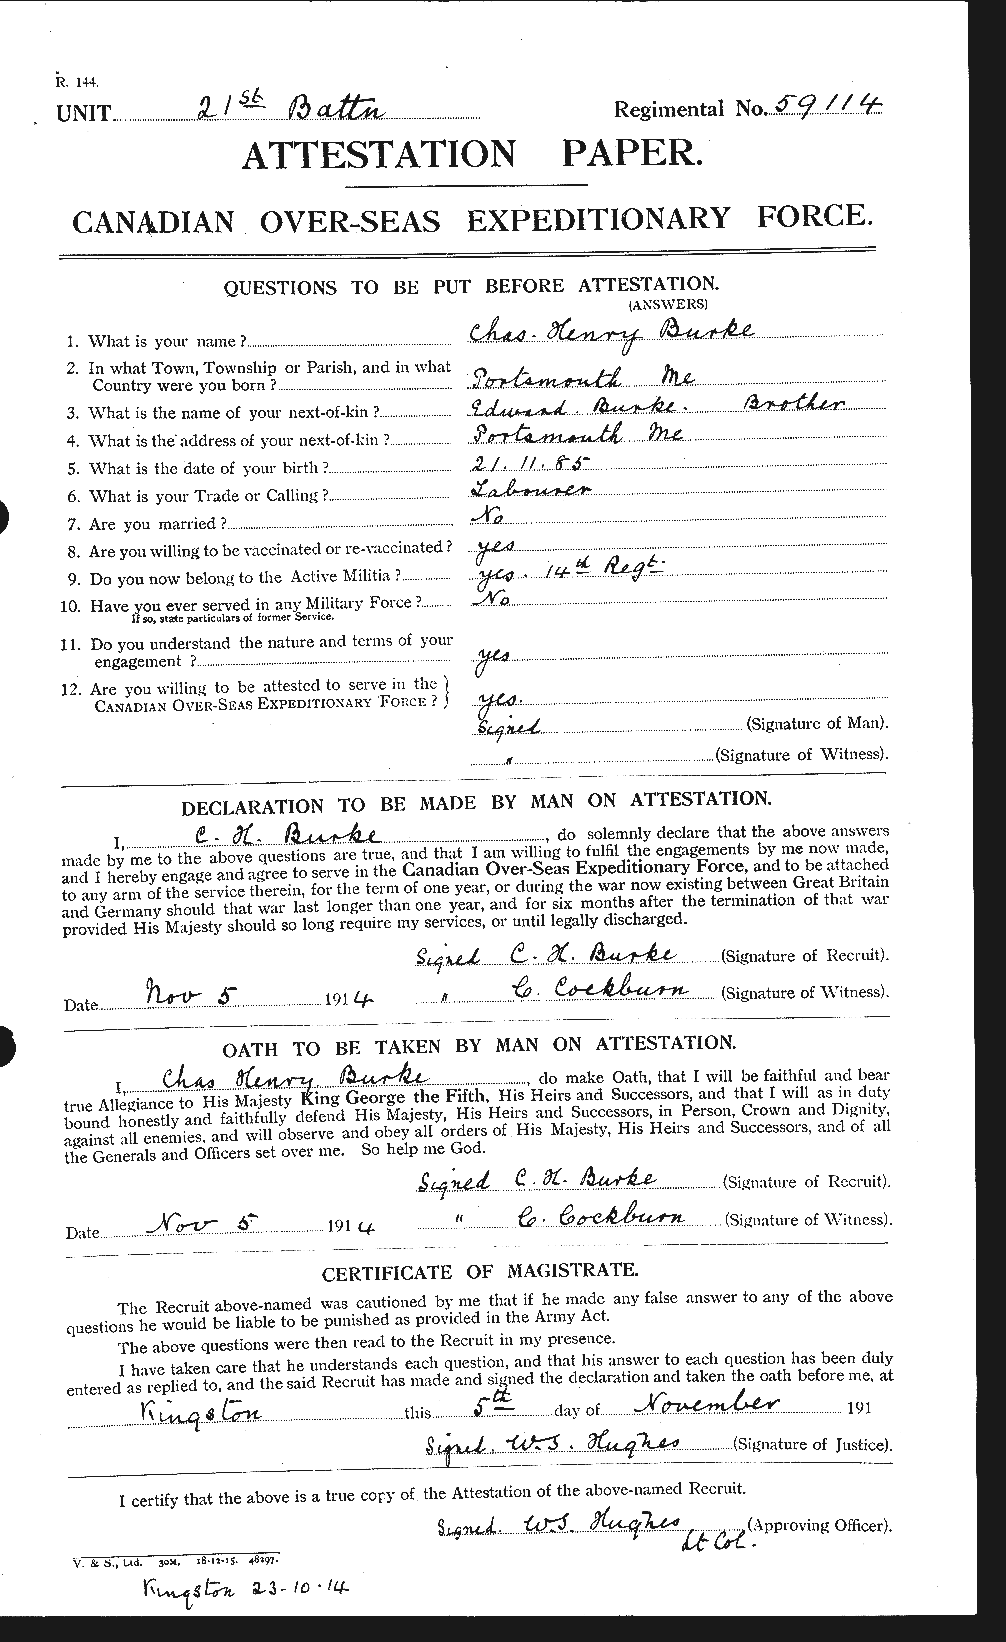 Dossiers du Personnel de la Première Guerre mondiale - CEC 272391a